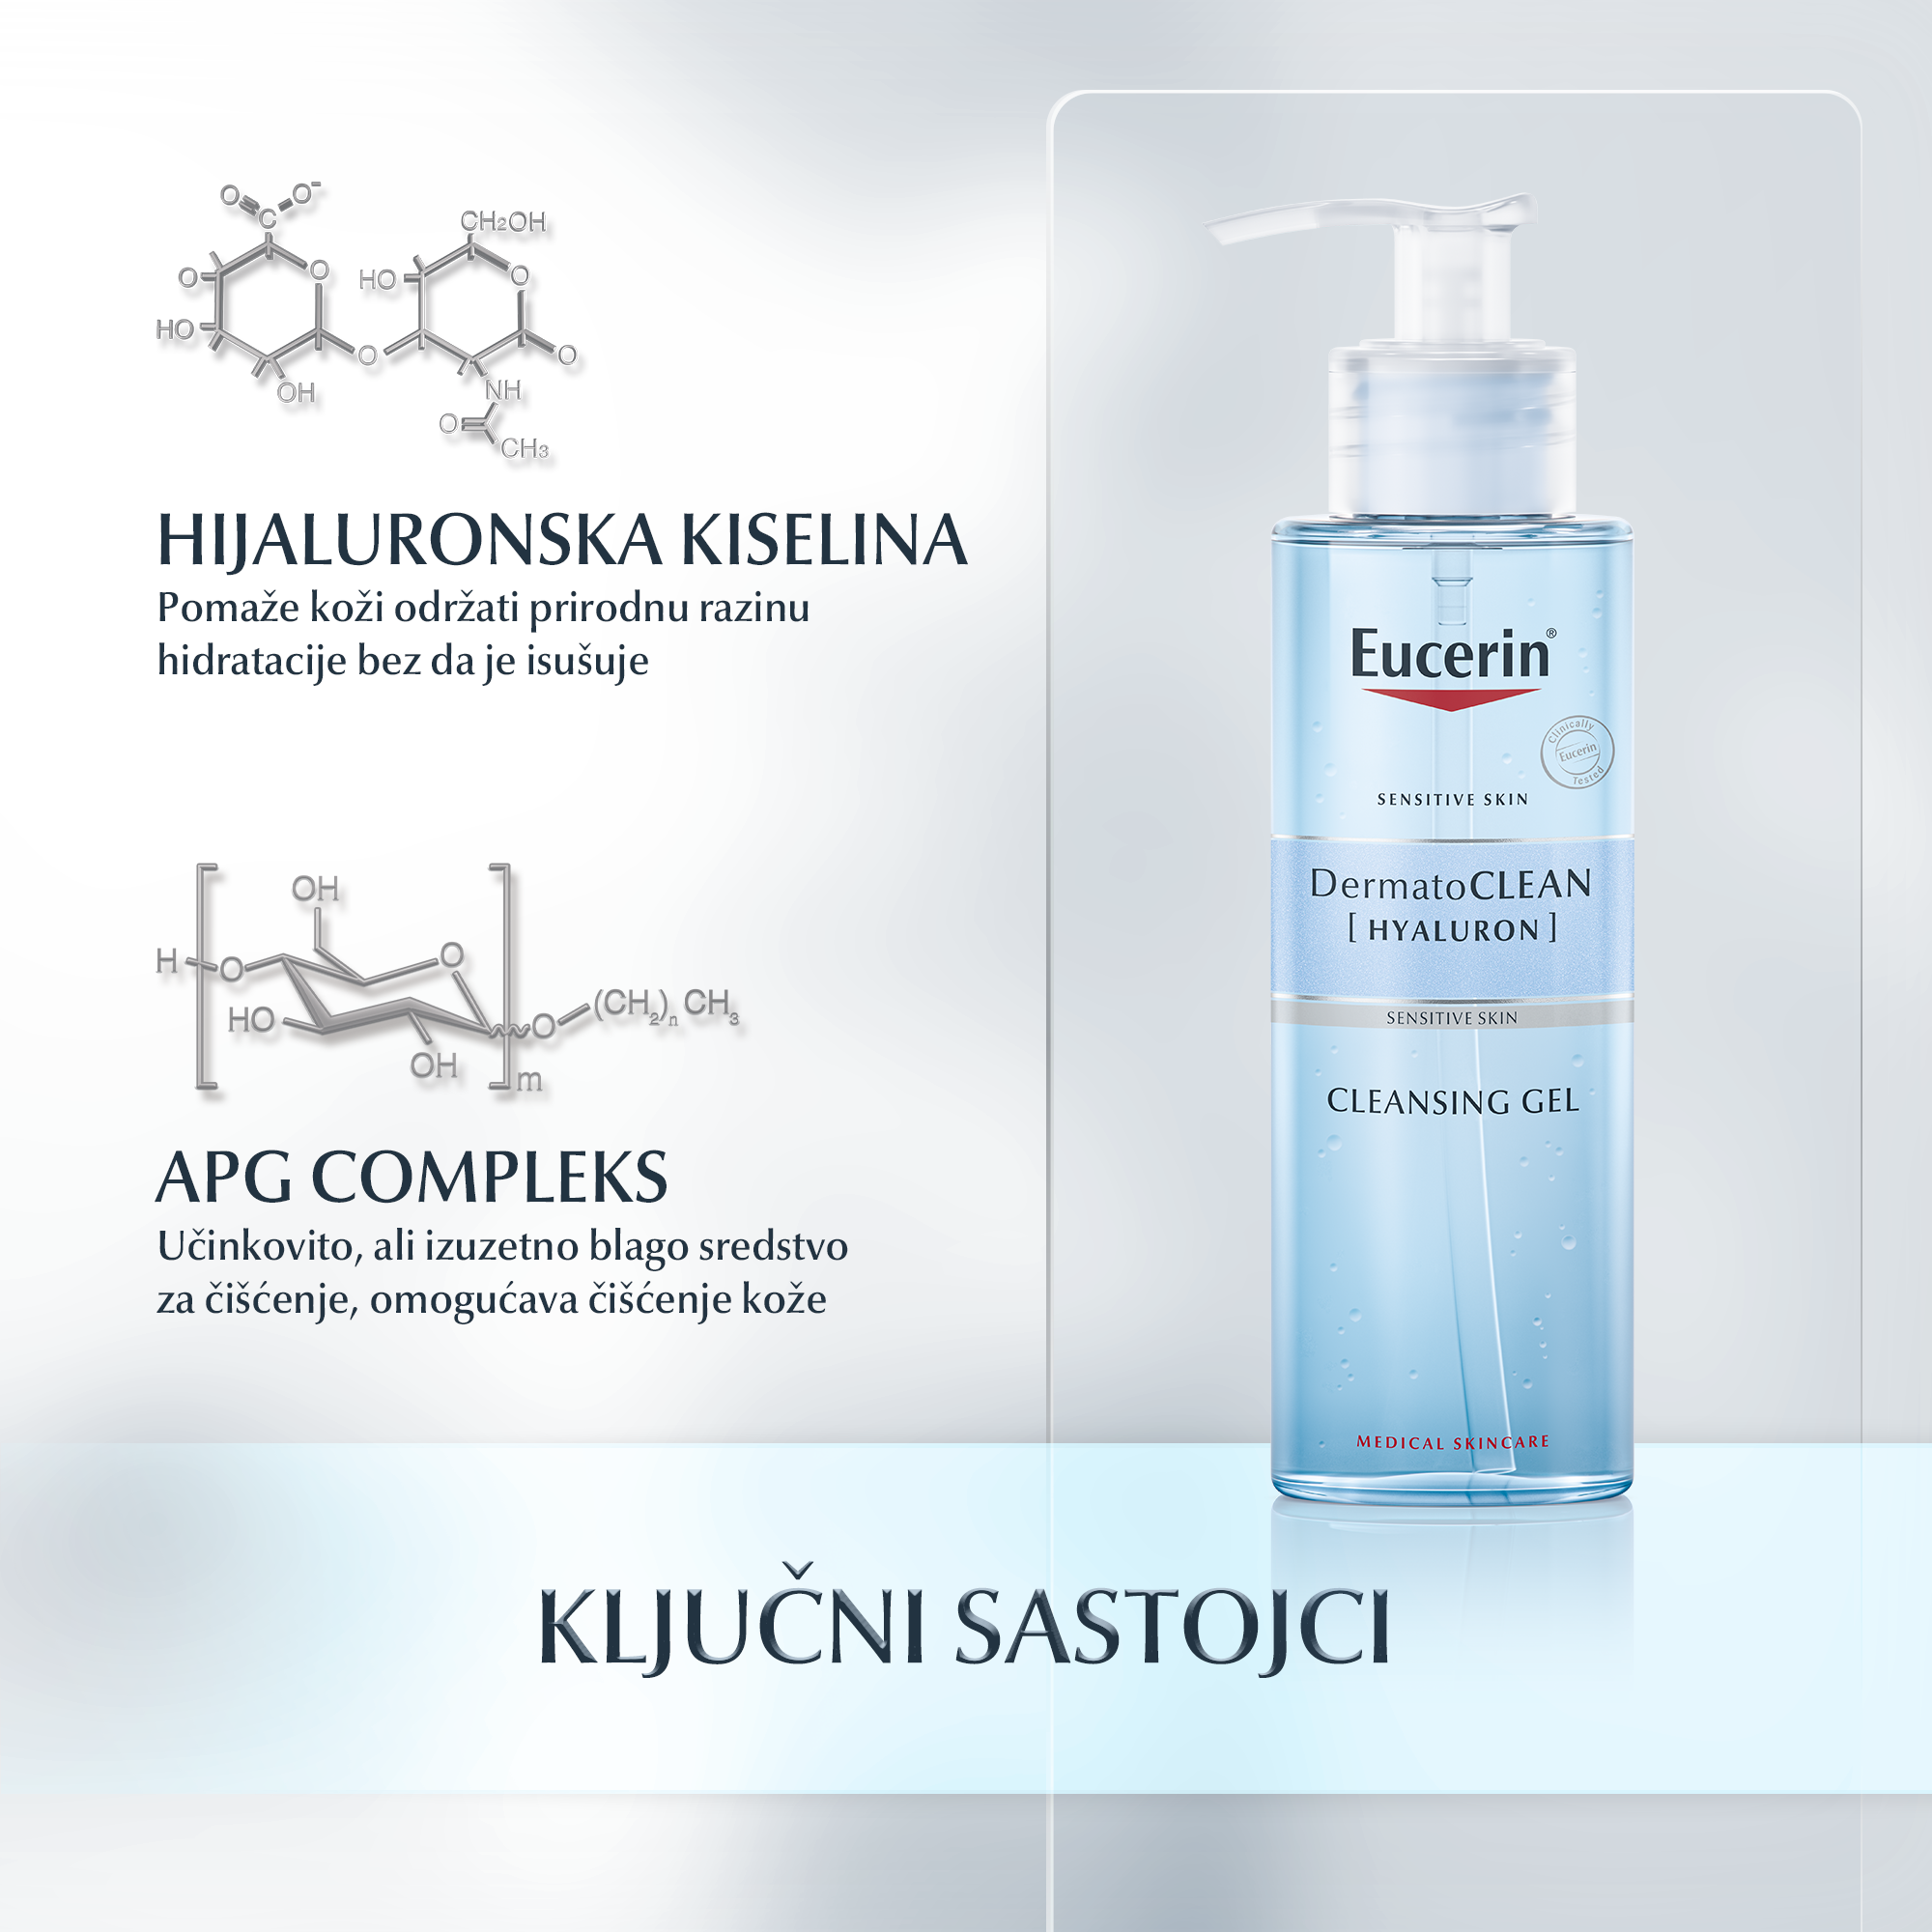 DermatoCLEAN [HYALURON] gel za čišćenje